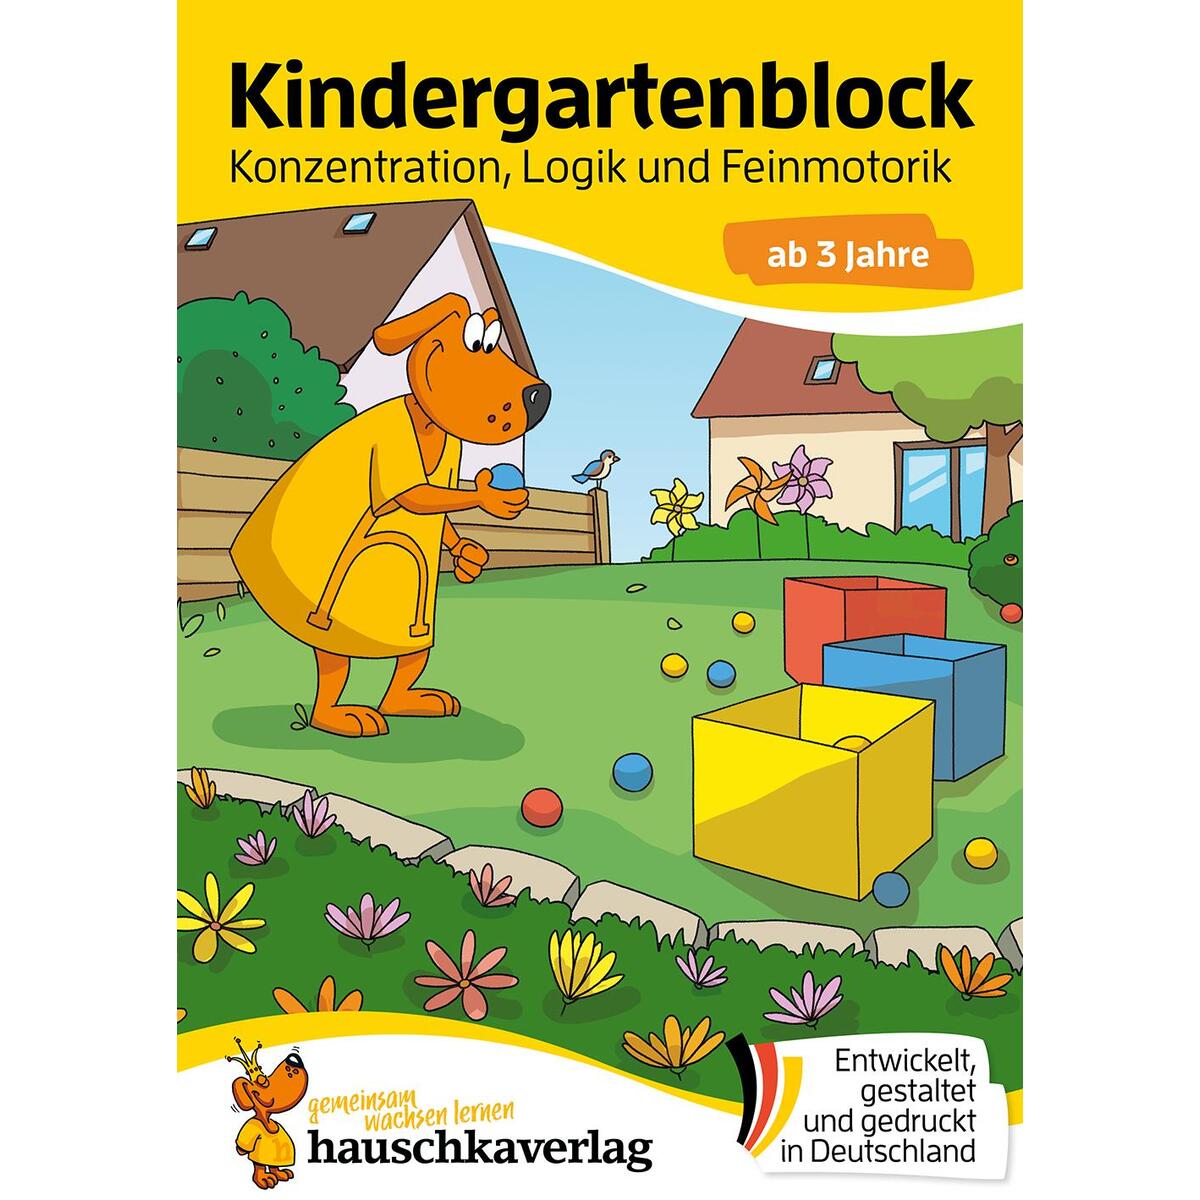 Kindergartenblock ab 3 Jahre - Konzentration, Logik, Feinmotorik von Hauschka Verlag GmbH